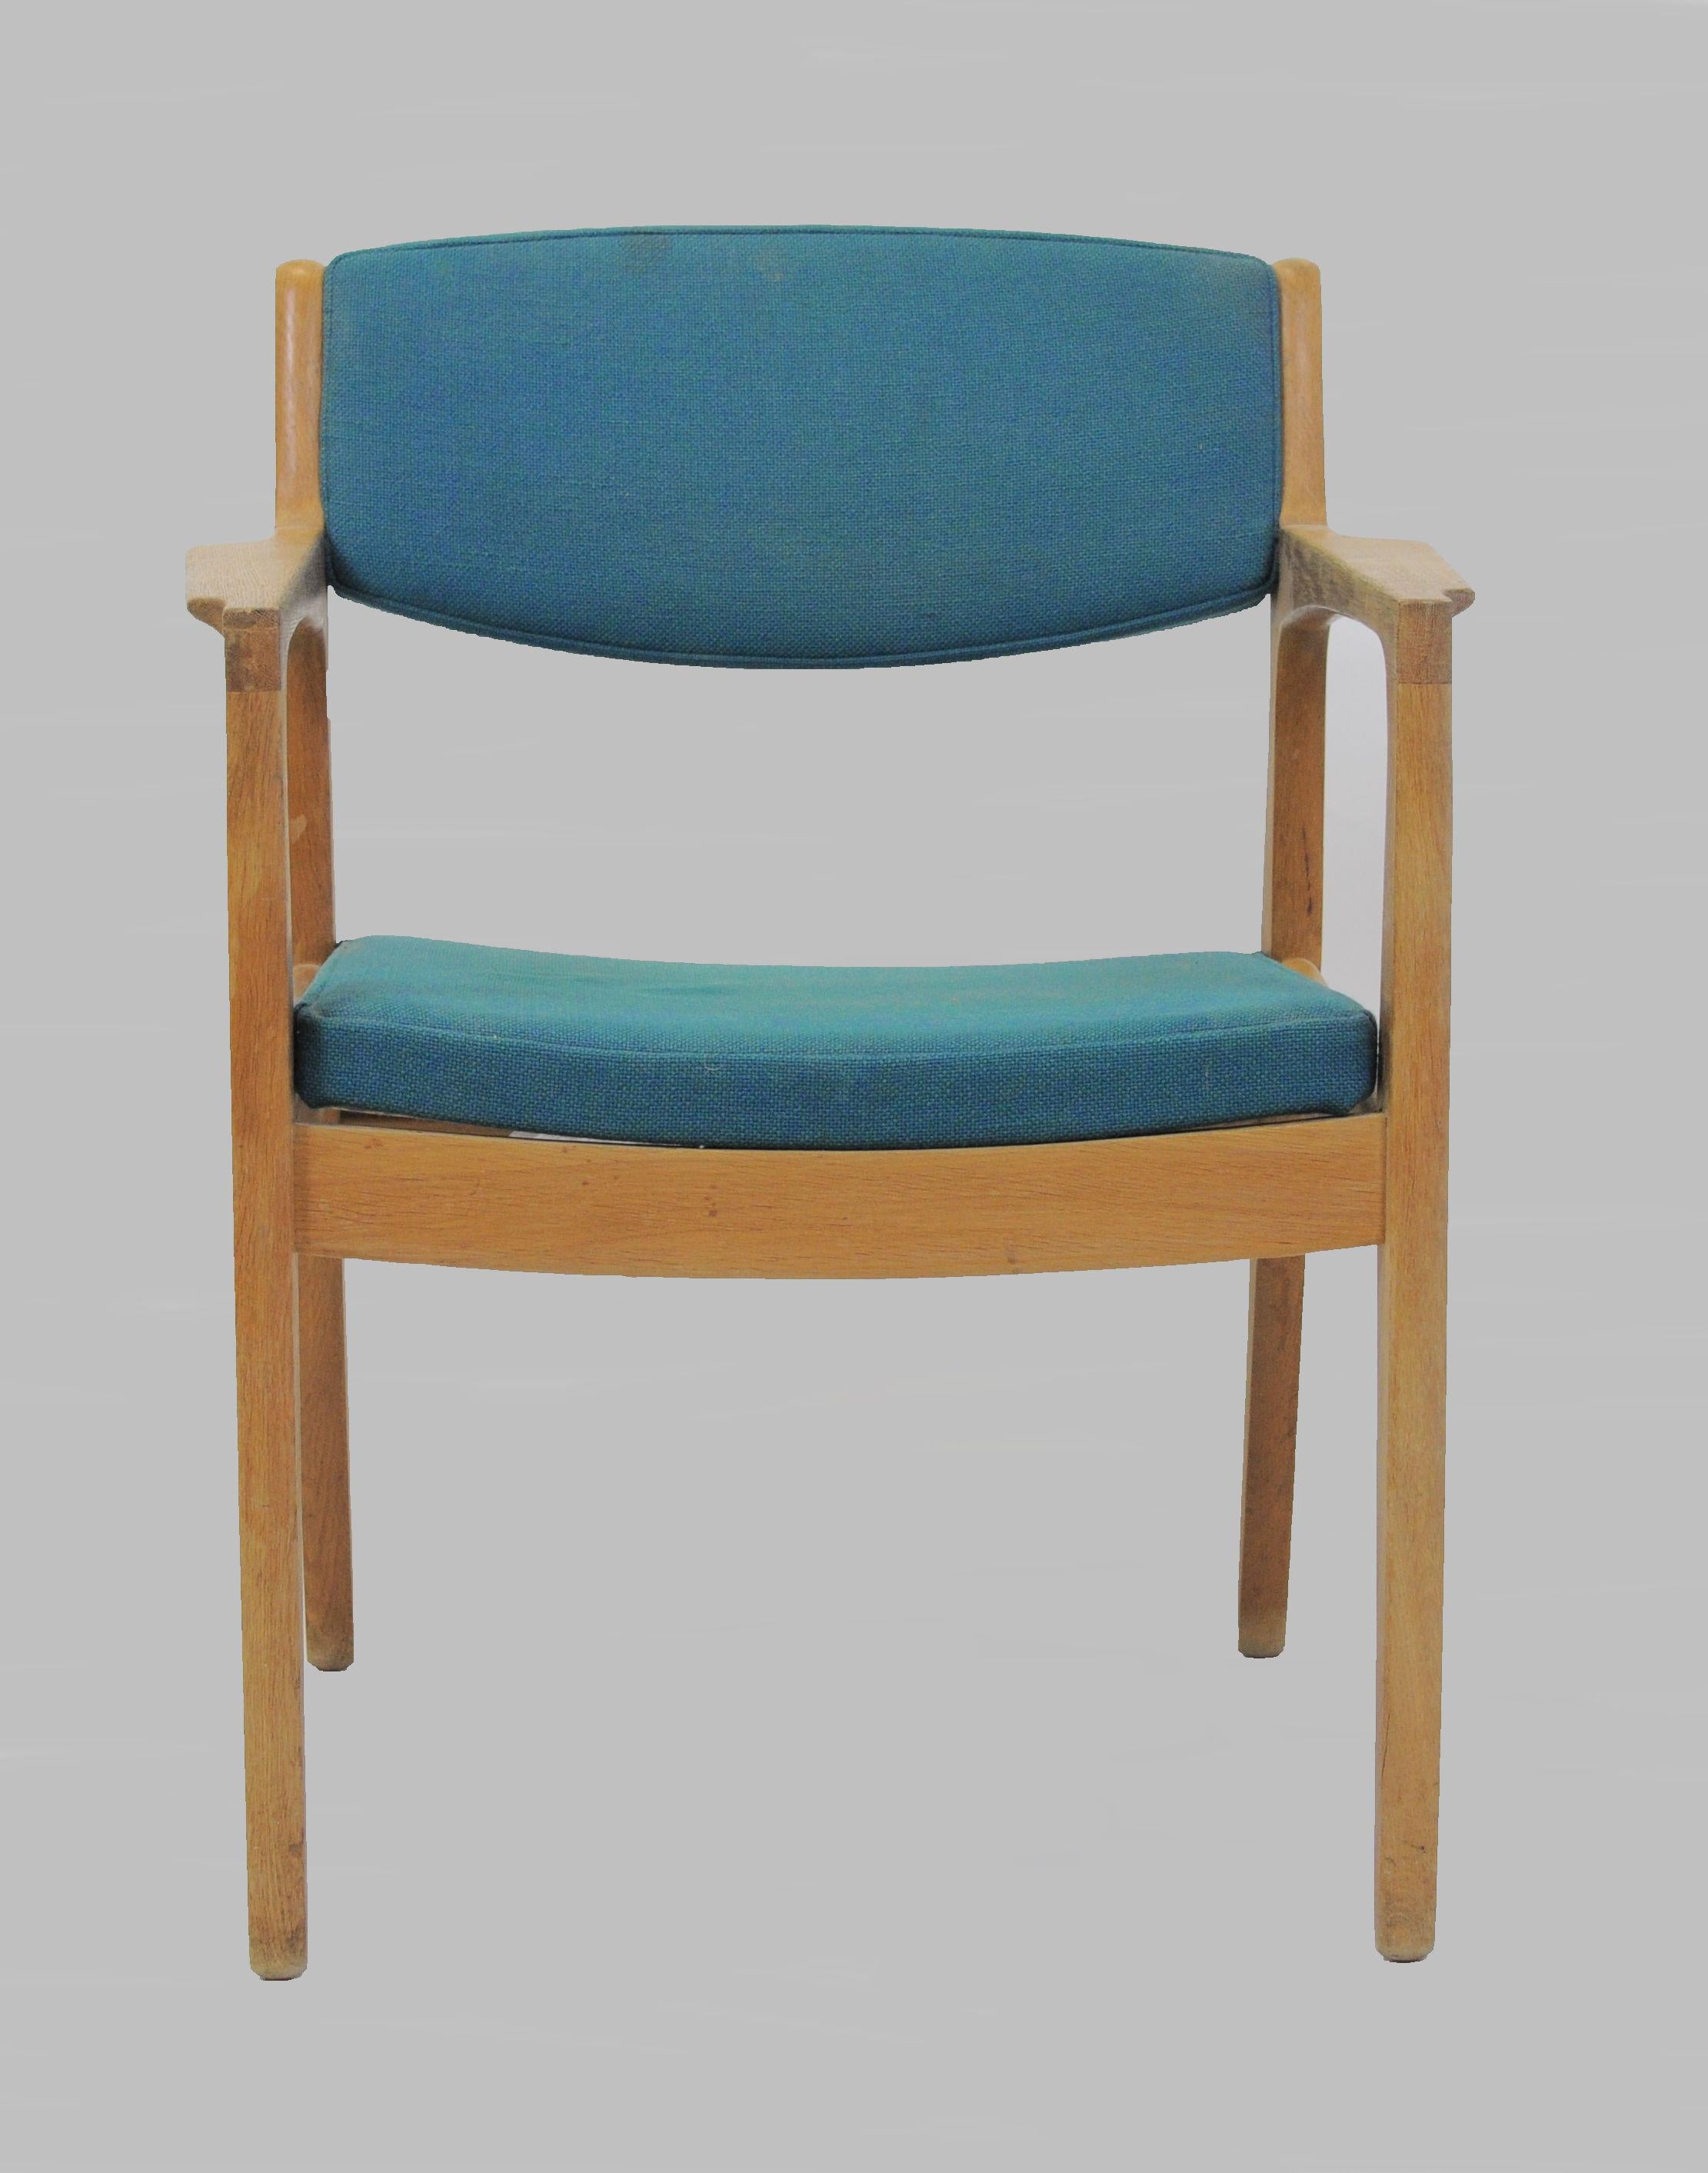 fauteuils des années 1960 conçus par Erik Buch et produits par Ørum Møbler.

Les chaises confortables sont fabriquées à partir d'un cadre en chêne massif. Les chaises ont été révisées et refinies par notre ébéniste pour s'assurer qu'elles sont en